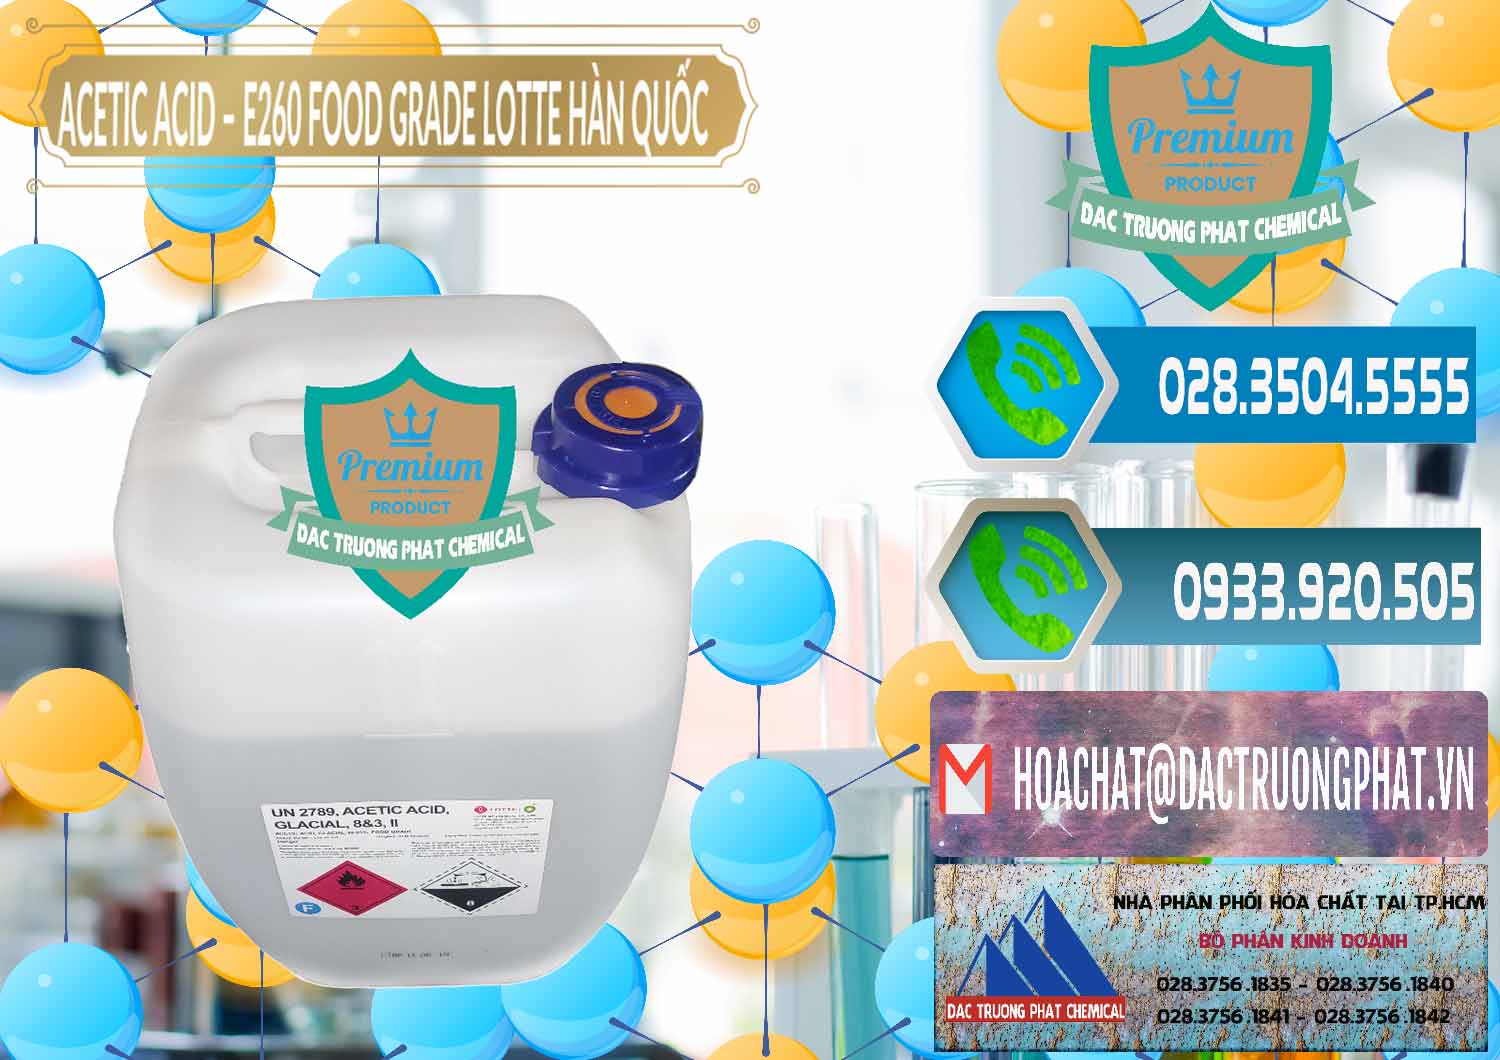 Nơi chuyên bán và cung ứng Acetic Acid – Axit Acetic E260 Food Grade Hàn Quốc Lotte Korea - 0003 - Đơn vị cung ứng ( phân phối ) hóa chất tại TP.HCM - congtyhoachat.net